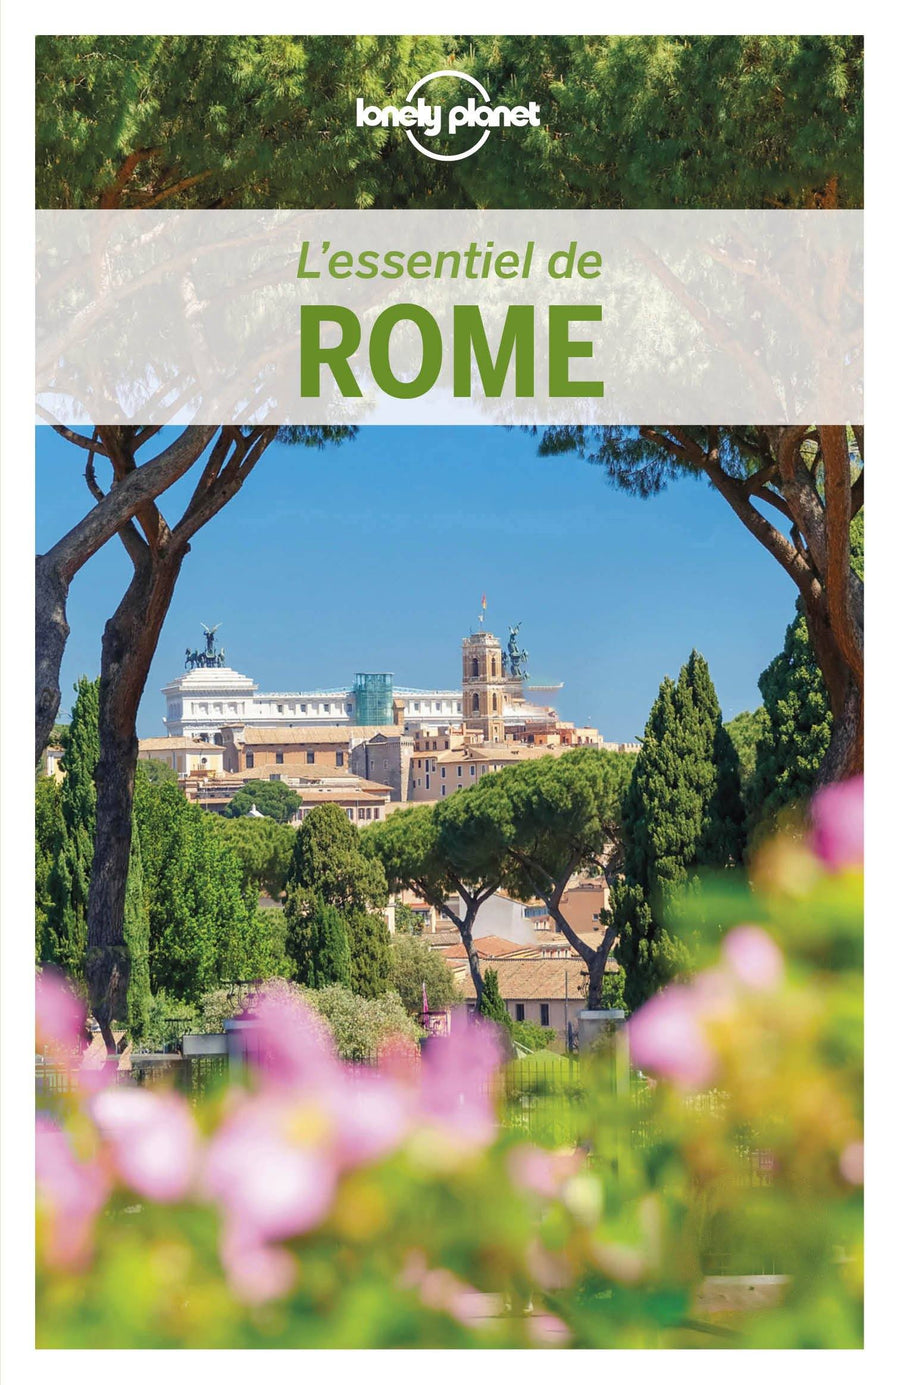 Guide de voyage - L'essentiel de Rome - Édition 2020 | Lonely Planet guide de voyage Lonely Planet 